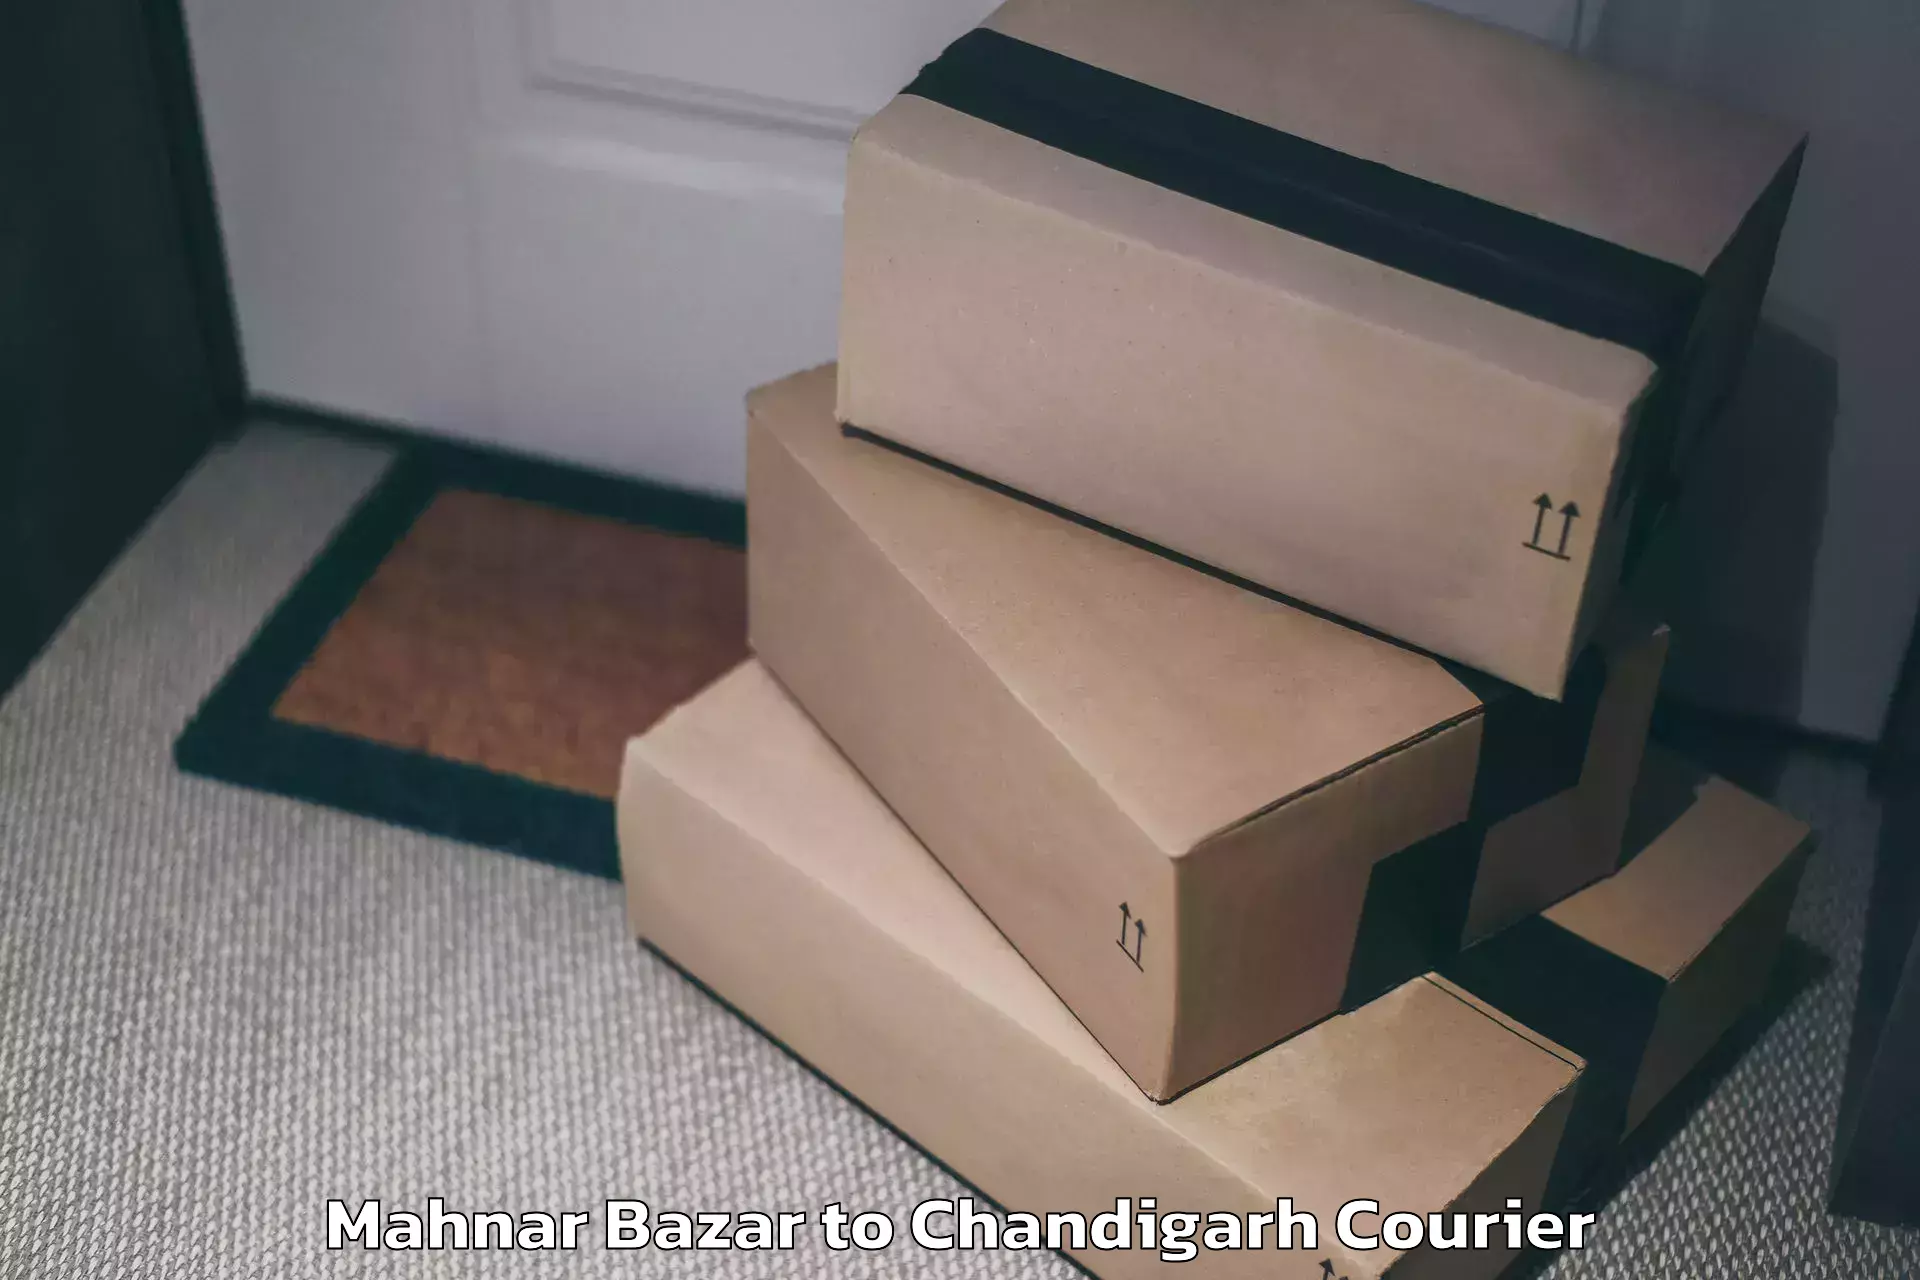 Luggage delivery estimate Mahnar Bazar to Chandigarh